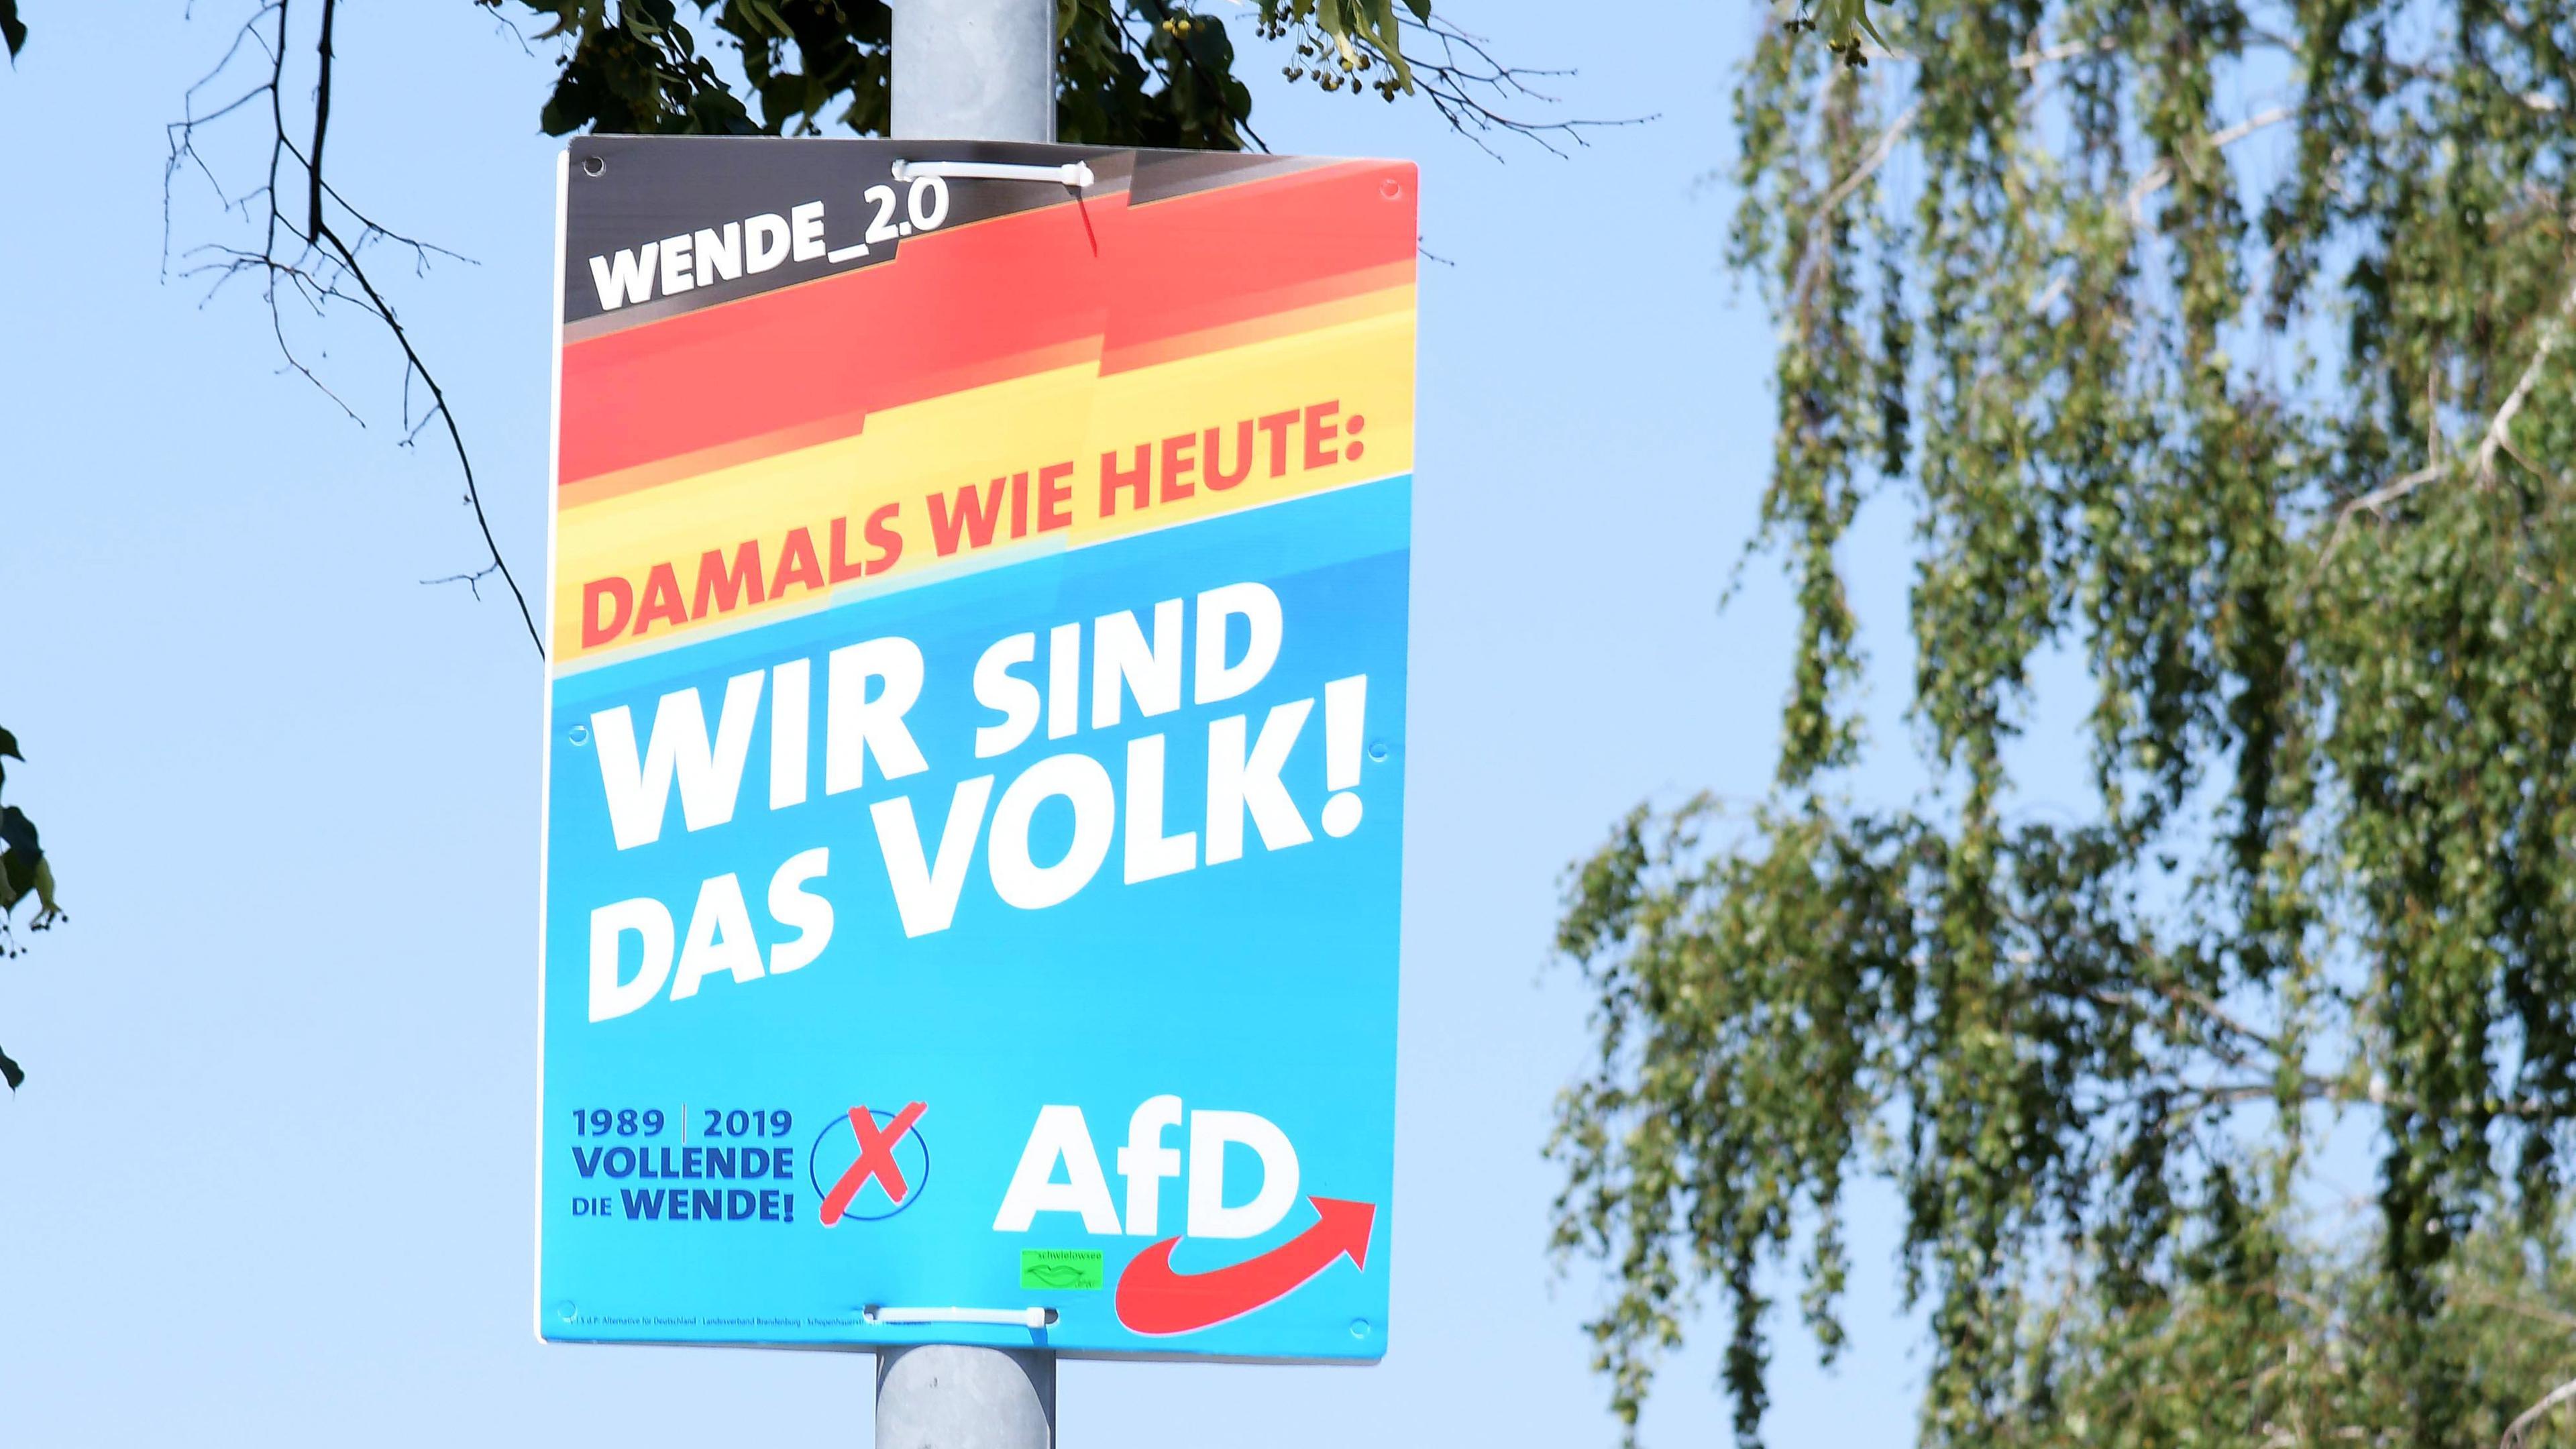 Landtagswahl Am 1 September Wer In Brandenburg Zur Wahl Steht Zdfheute